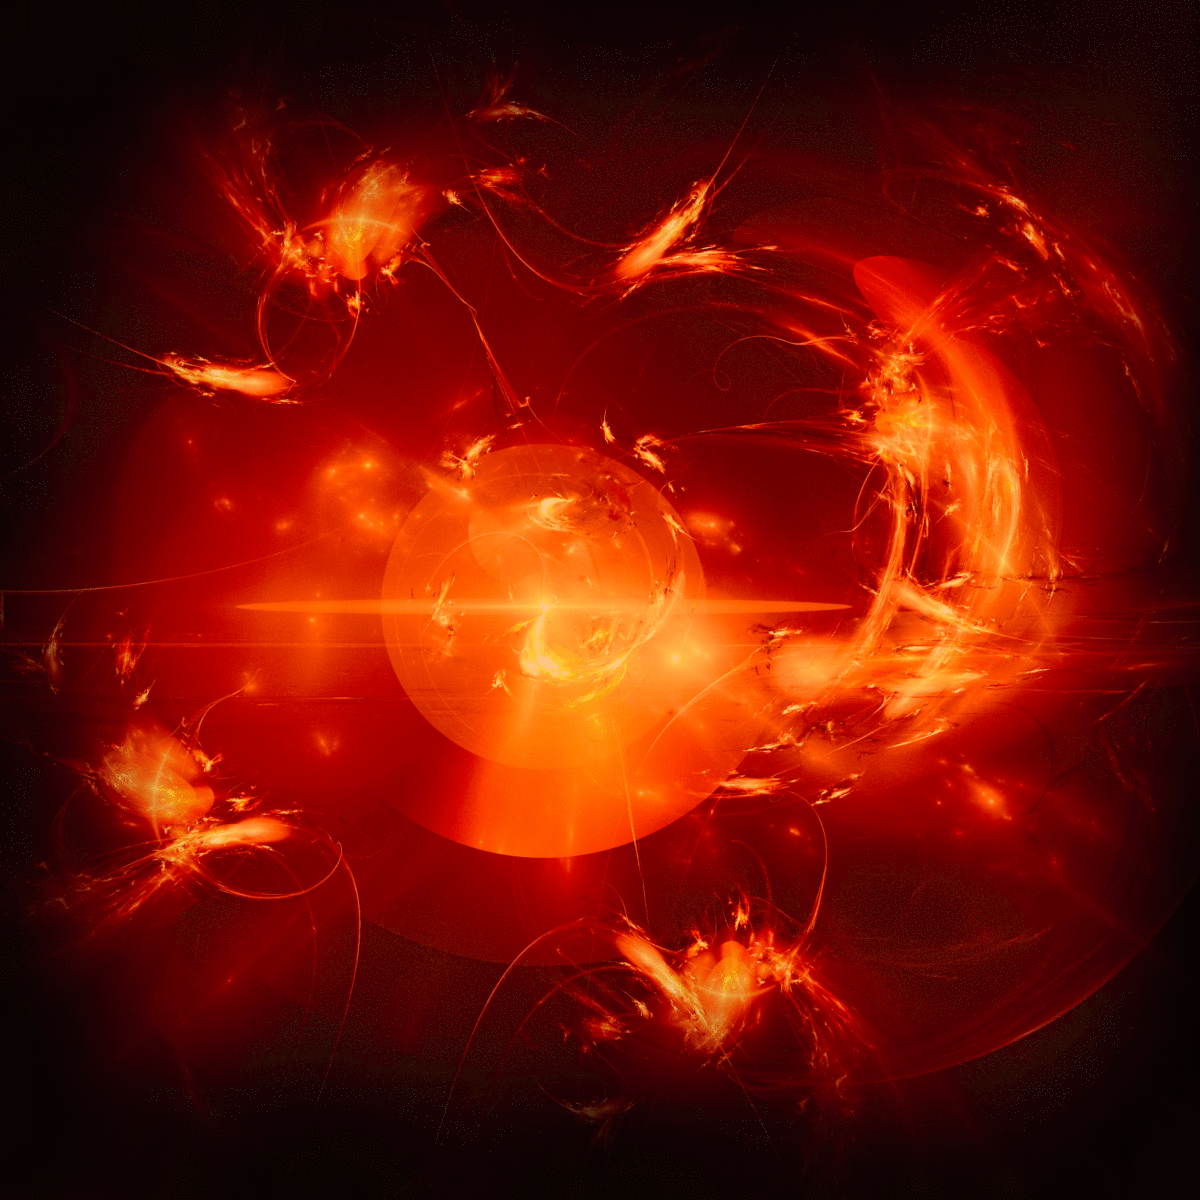 太陽の元となる超高温の恒星のイメージ画像。